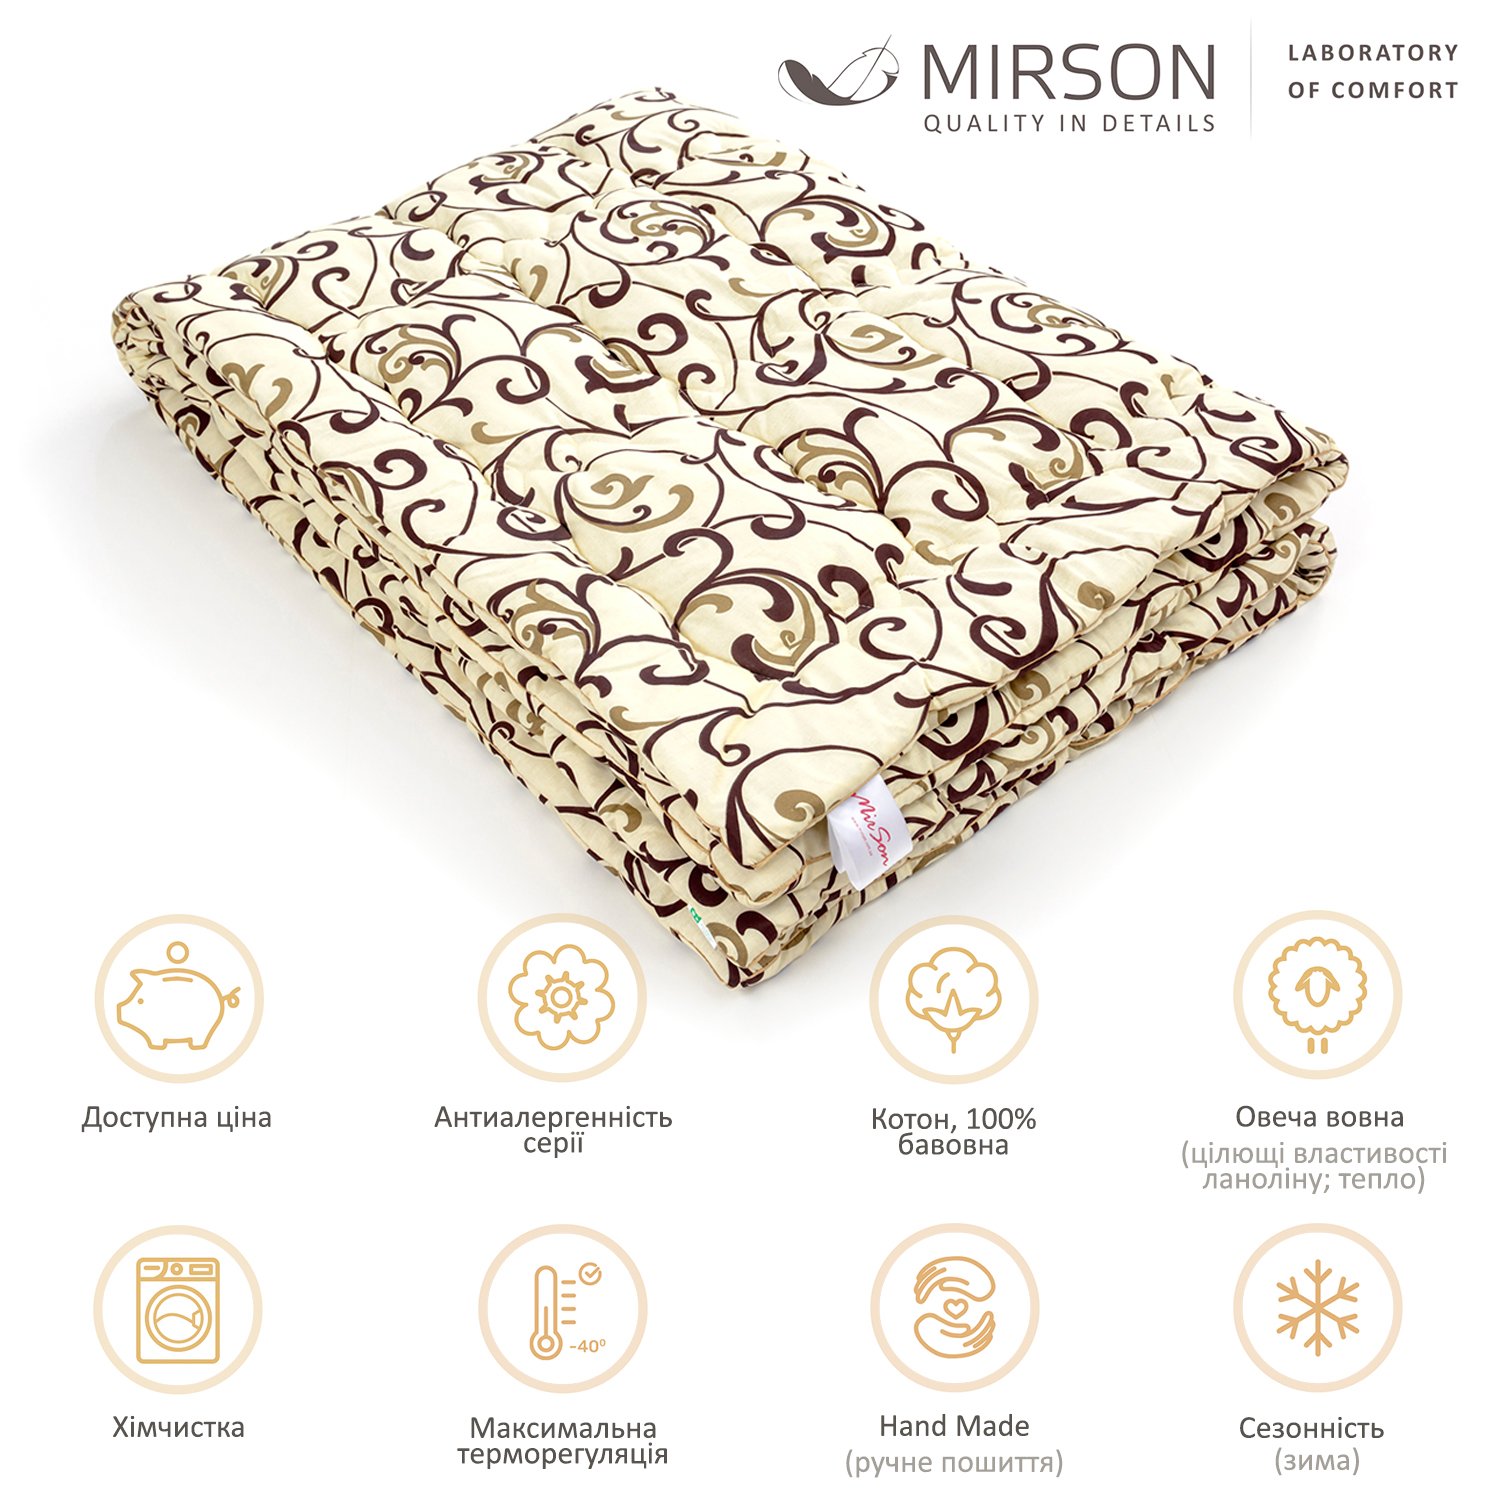 Одеяло шерстяное MirSon Hand Made №163, зимнее, 220x240 см, бежевое с узором - фото 5